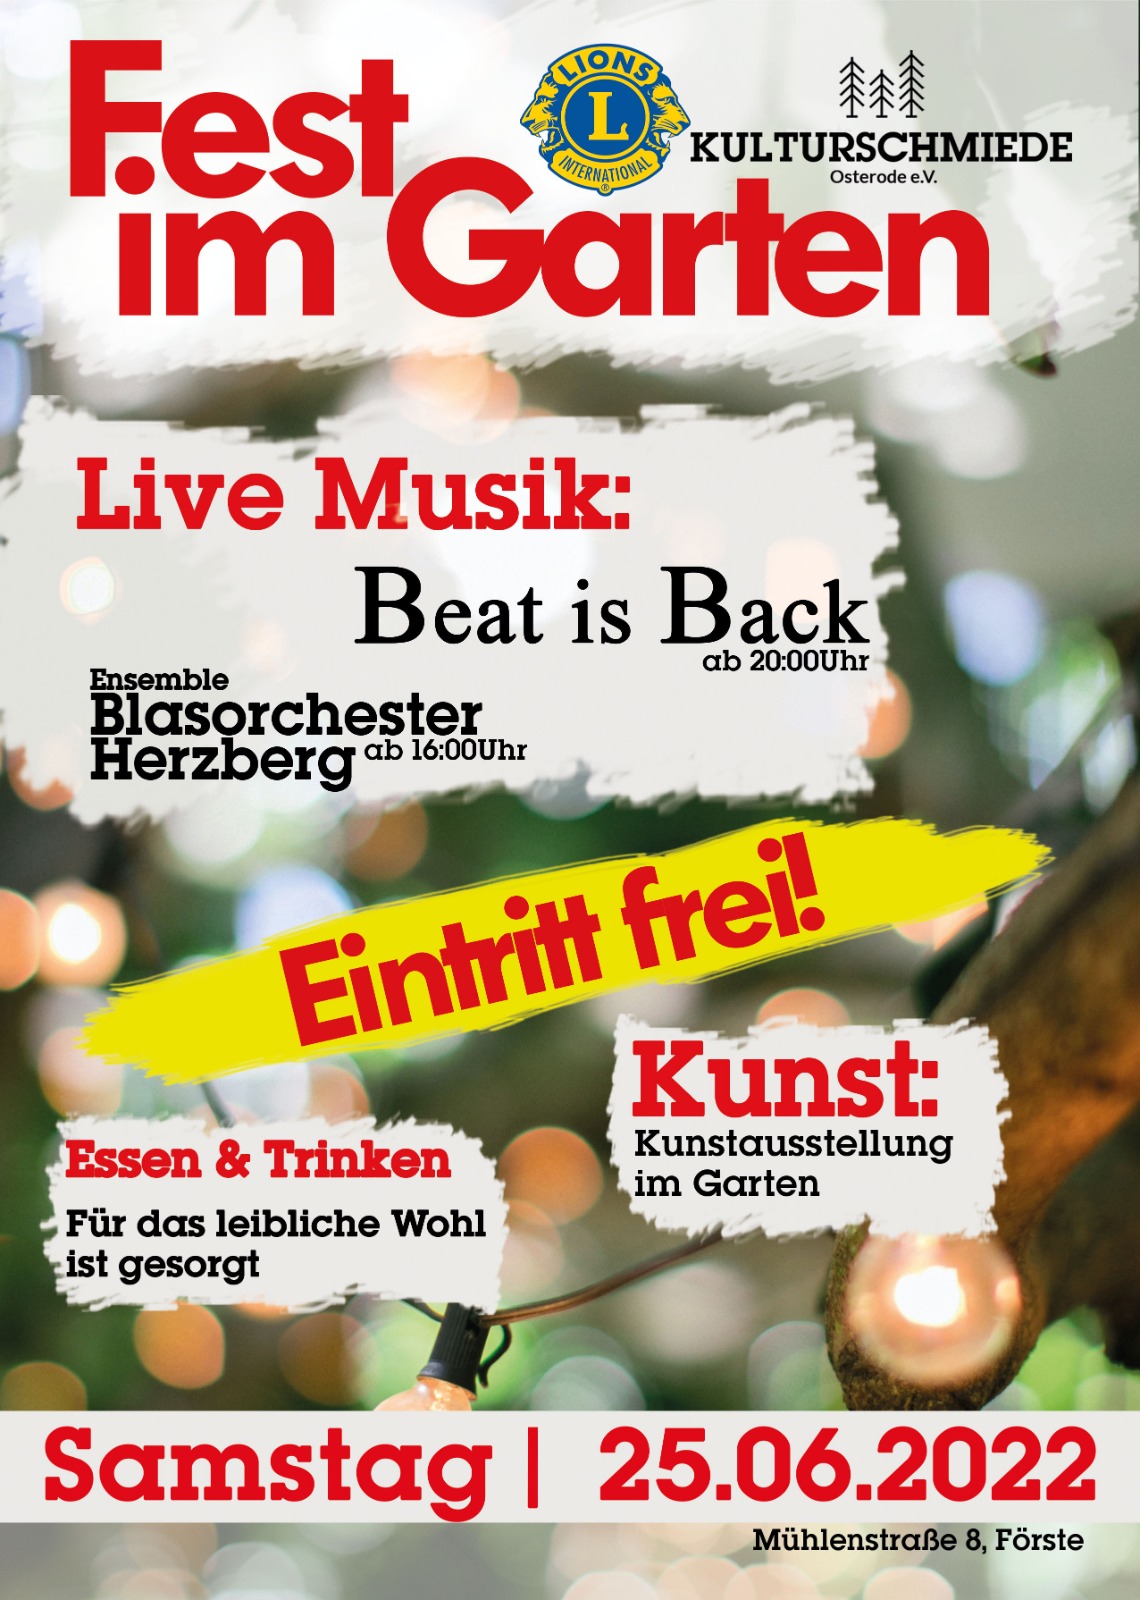 Flyer "Fest im Garten" am 25.06.2022 in Förste